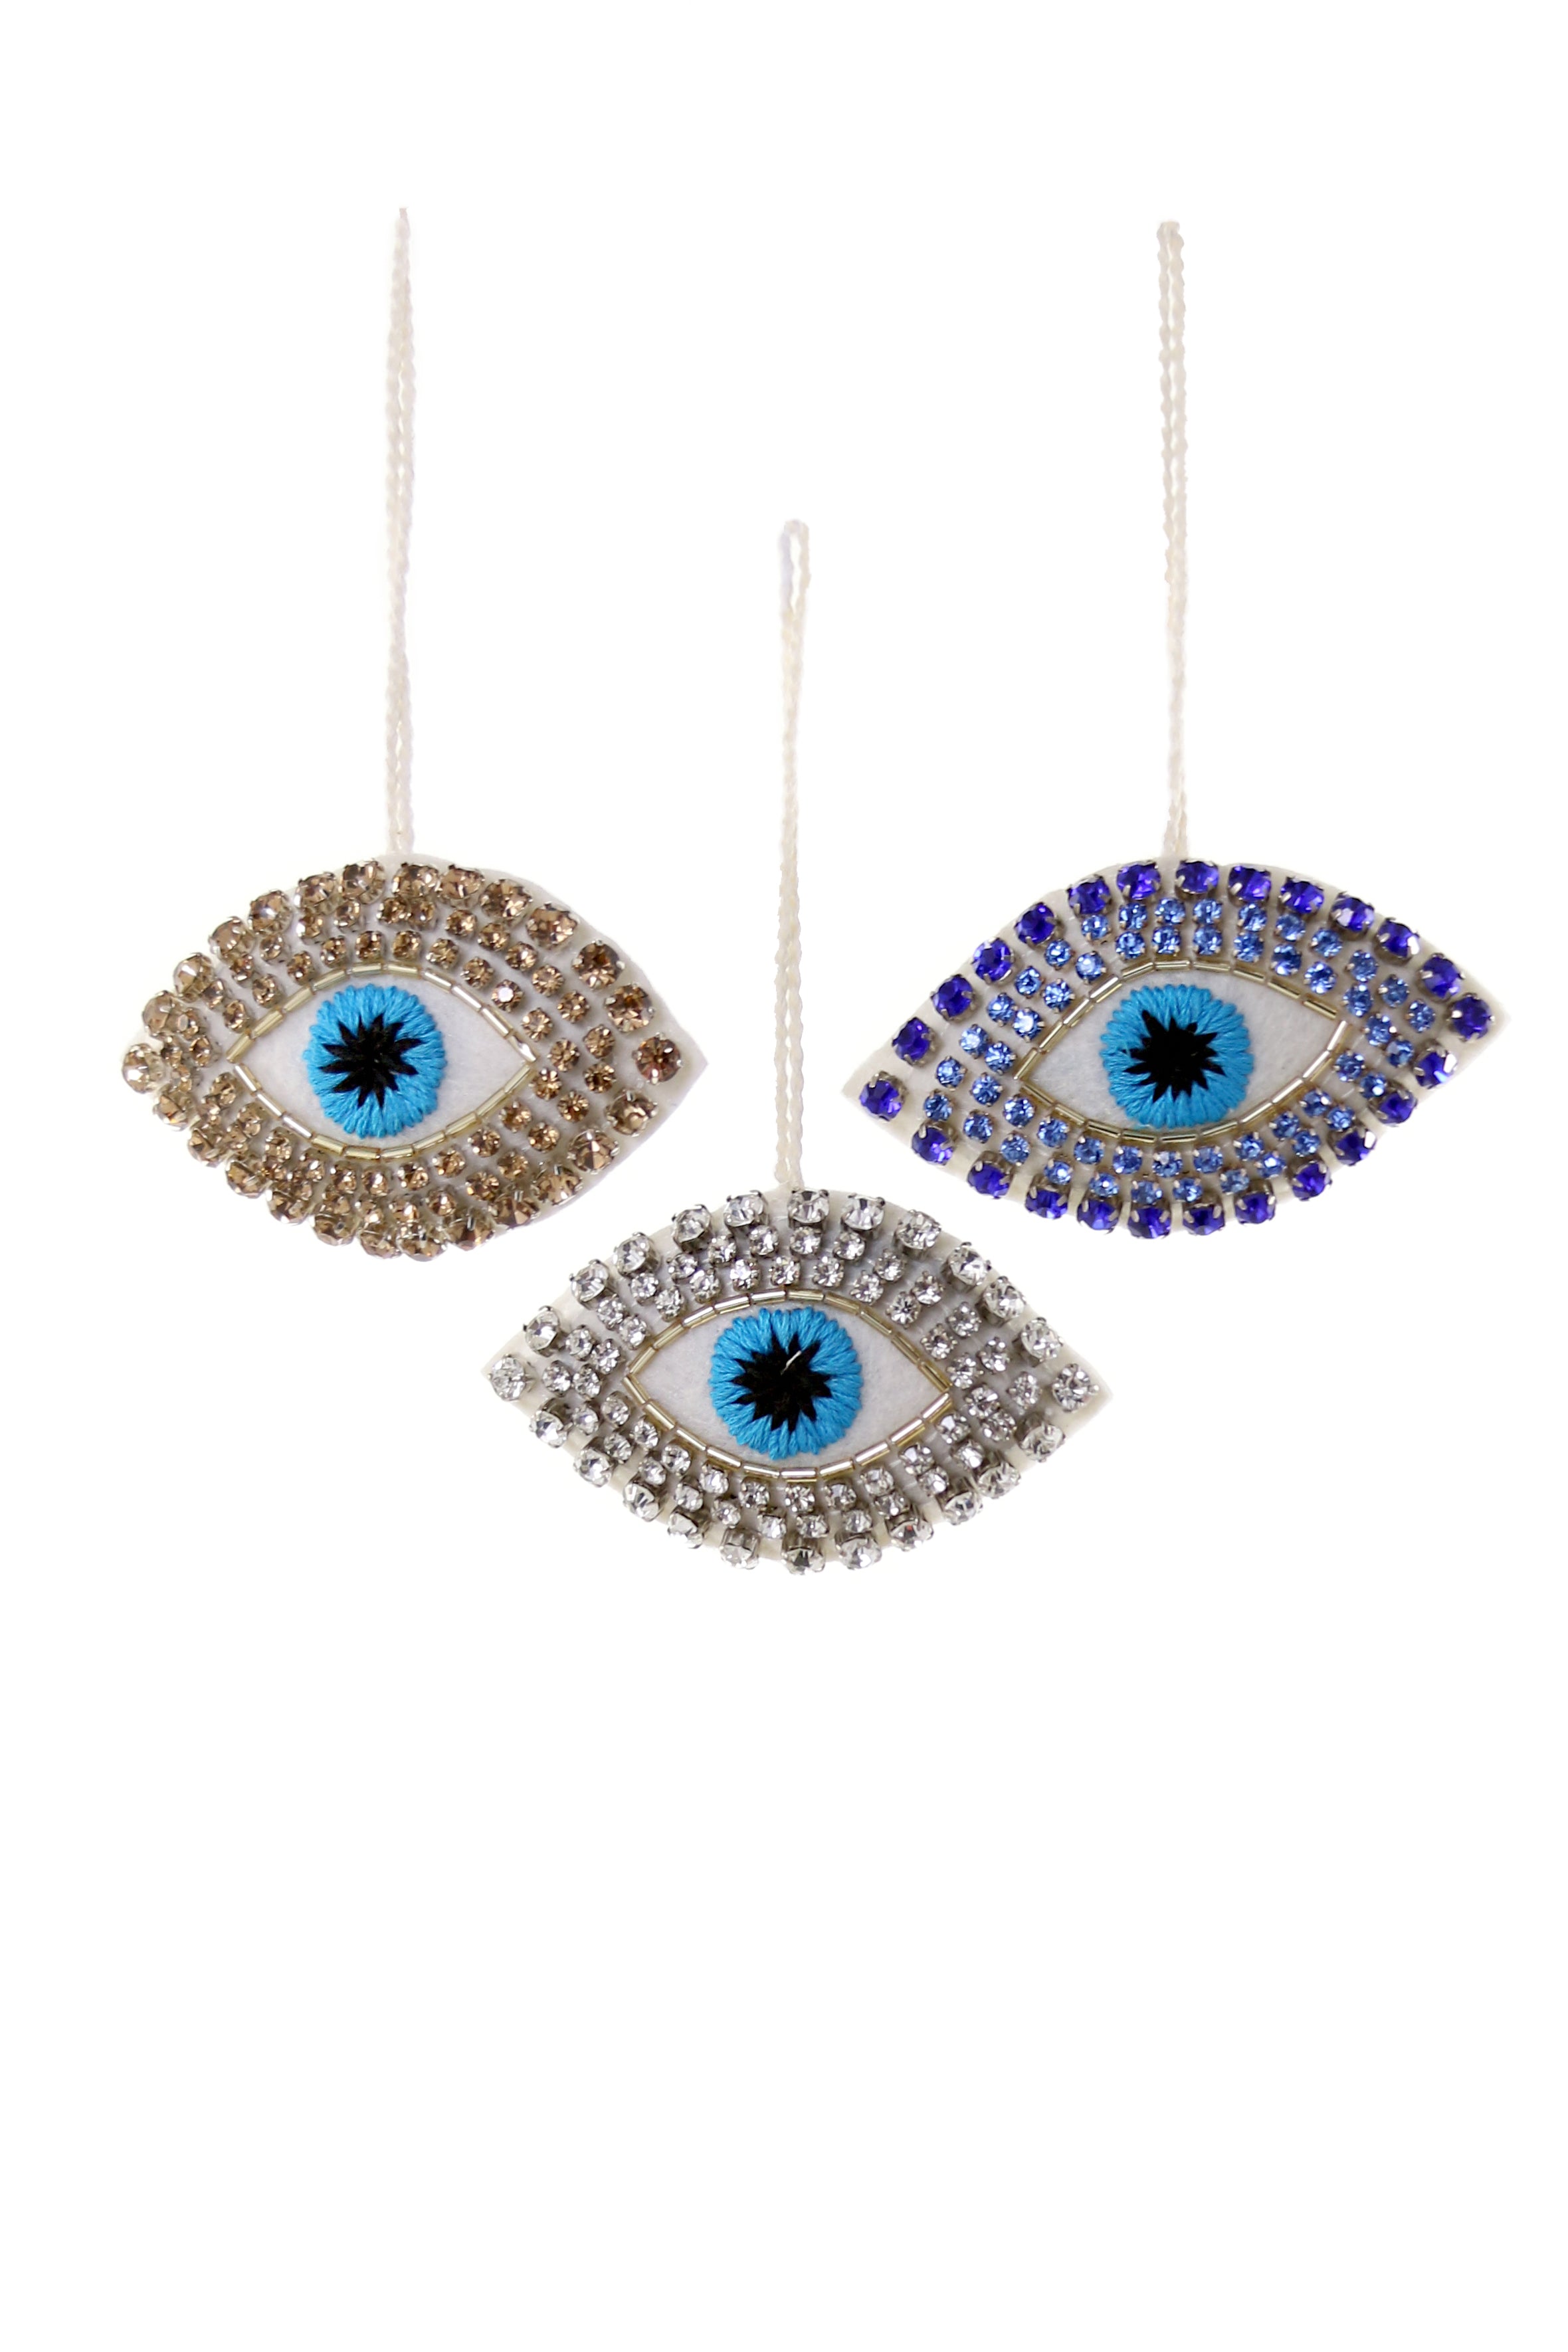 Jeweled Eye Ornament